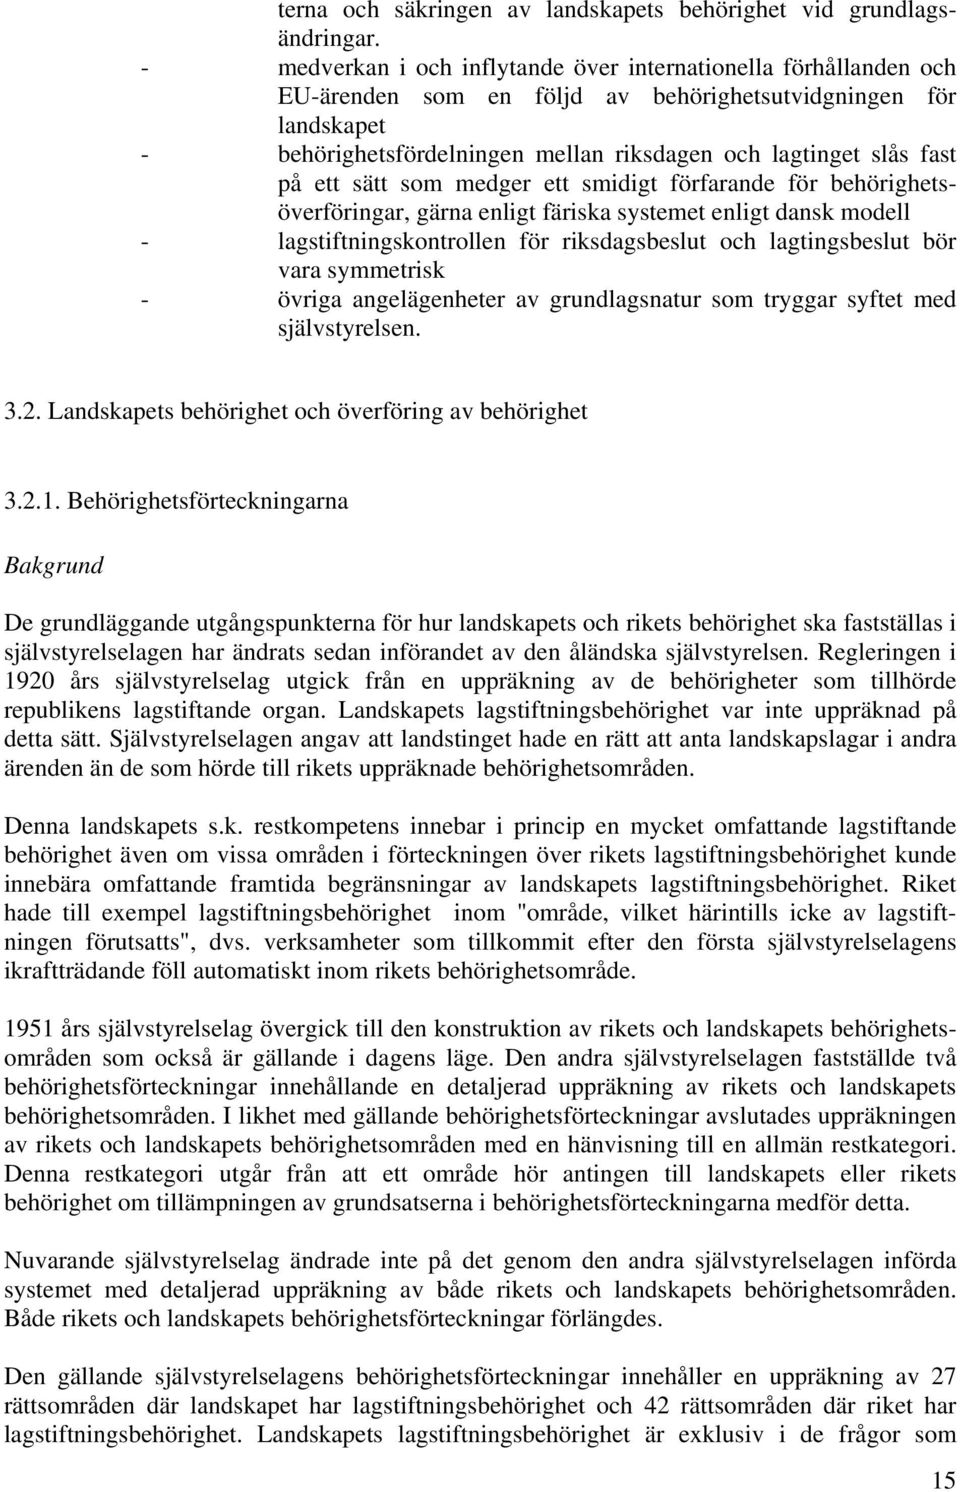 på ett sätt som medger ett smidigt förfarande för behörighetsöverföringar, gärna enligt färiska systemet enligt dansk modell - lagstiftningskontrollen för riksdagsbeslut och lagtingsbeslut bör vara